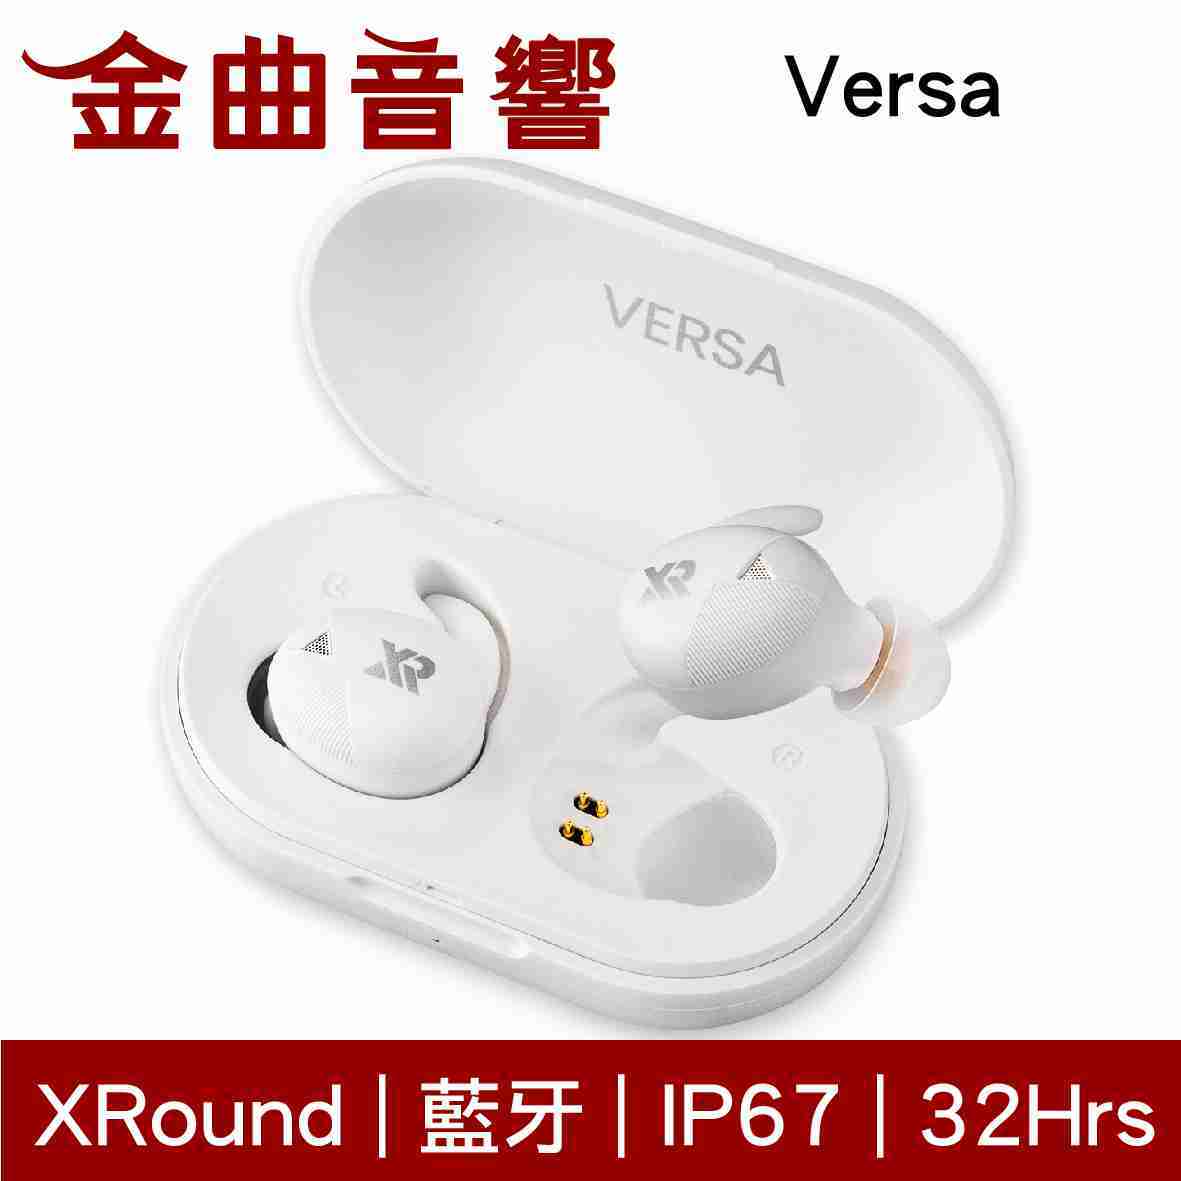 【現貨】XRound Versa 簡約白 真無線 藍芽耳機 | 金曲音響